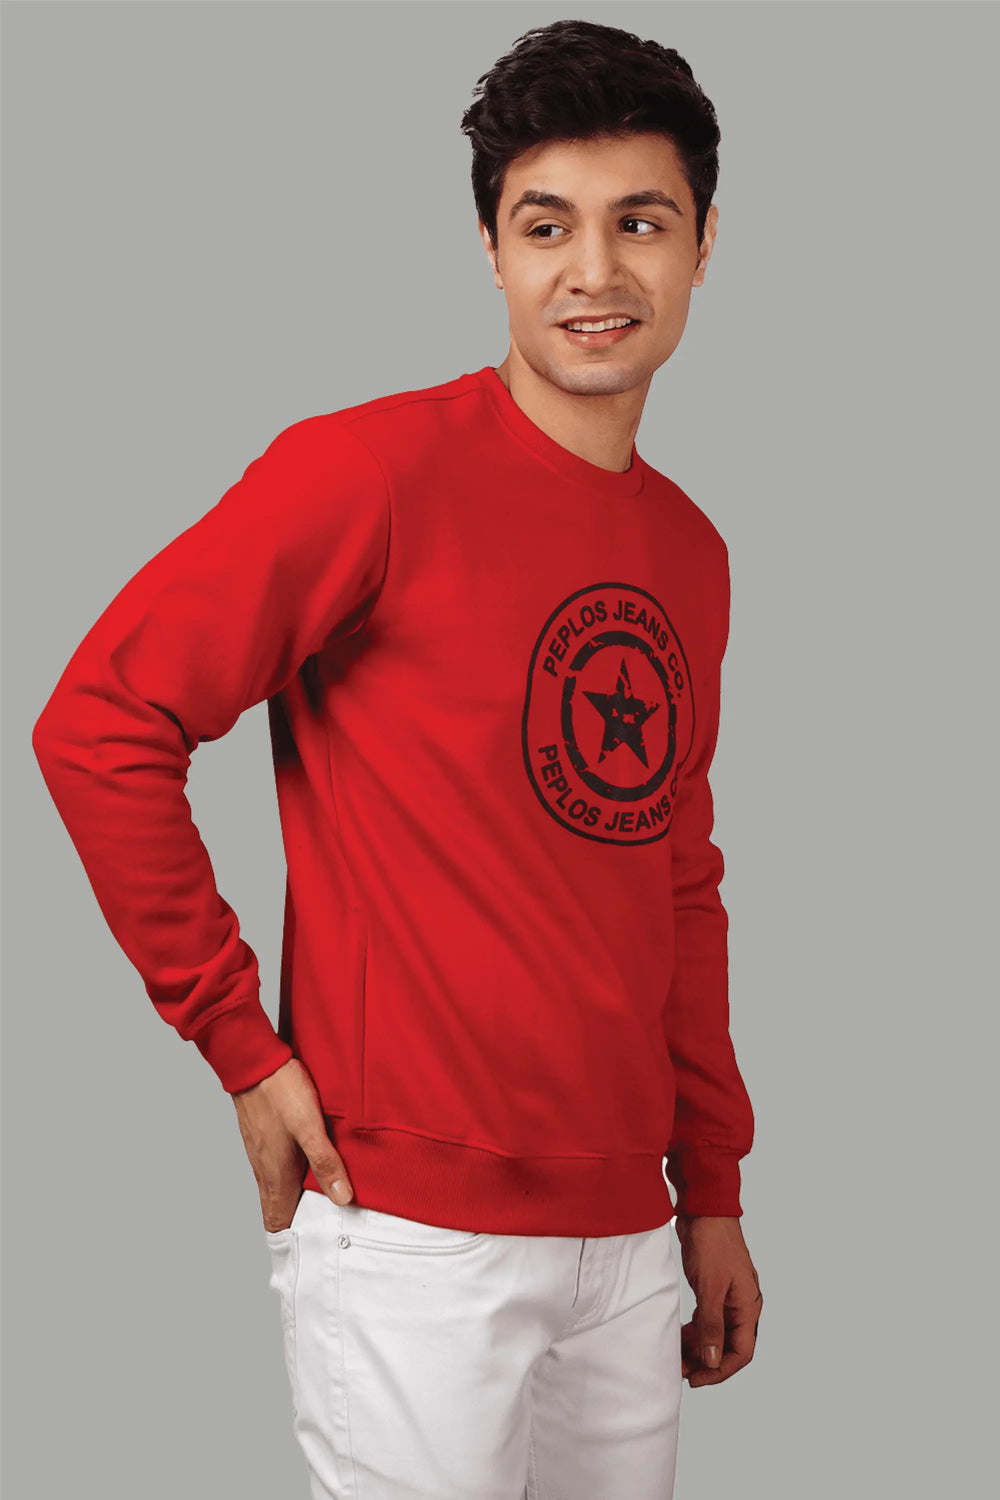 Regular Fit Printed Red Sweatshirt For Men - Peplos Jeans 